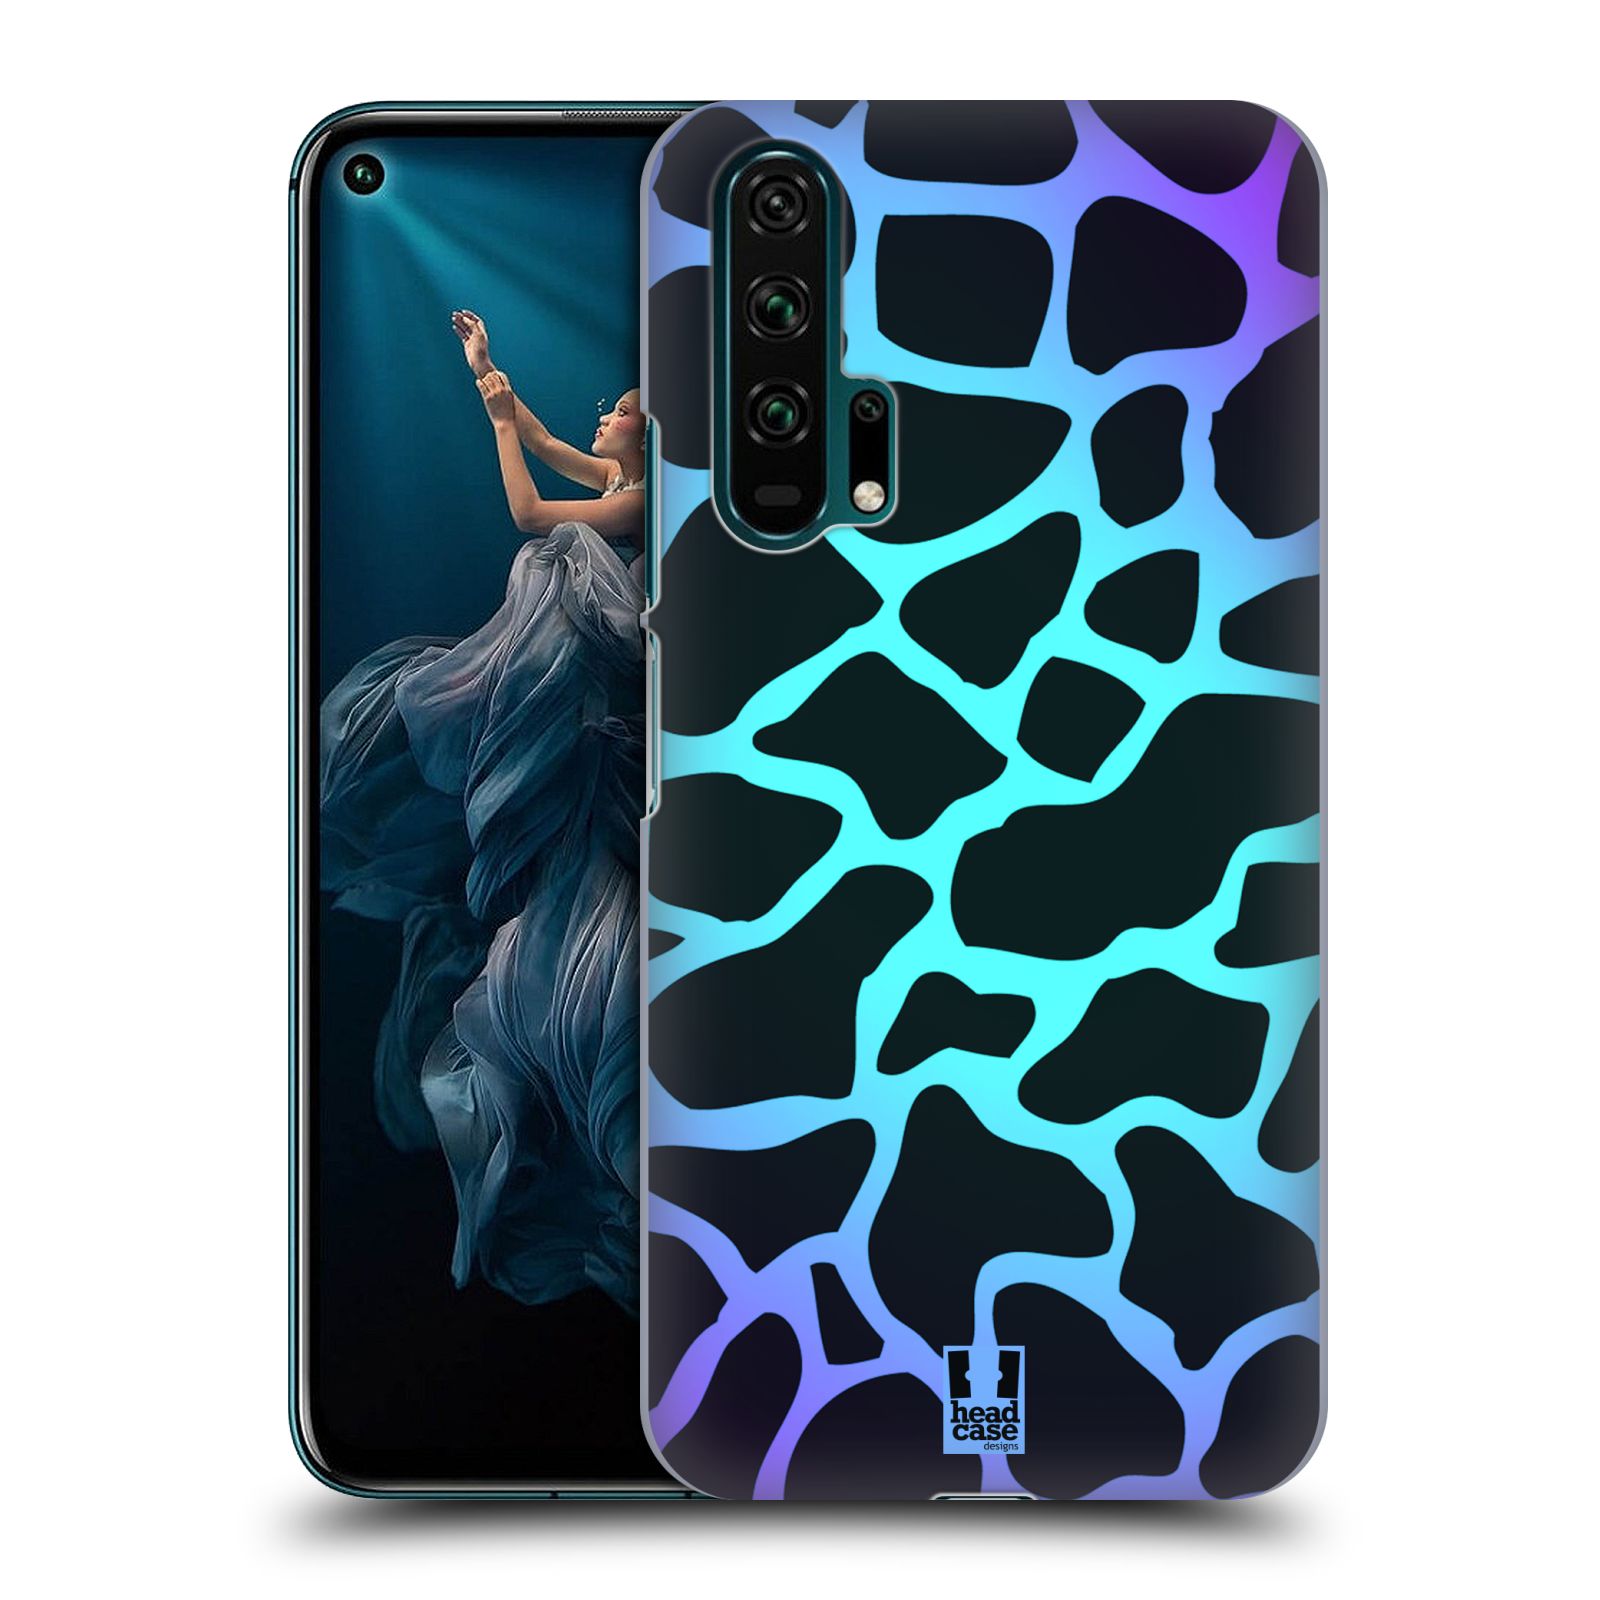 Pouzdro na mobil Honor 20 PRO - HEAD CASE - vzor Divočina zvíře tyrkysová žirafa magický vzor